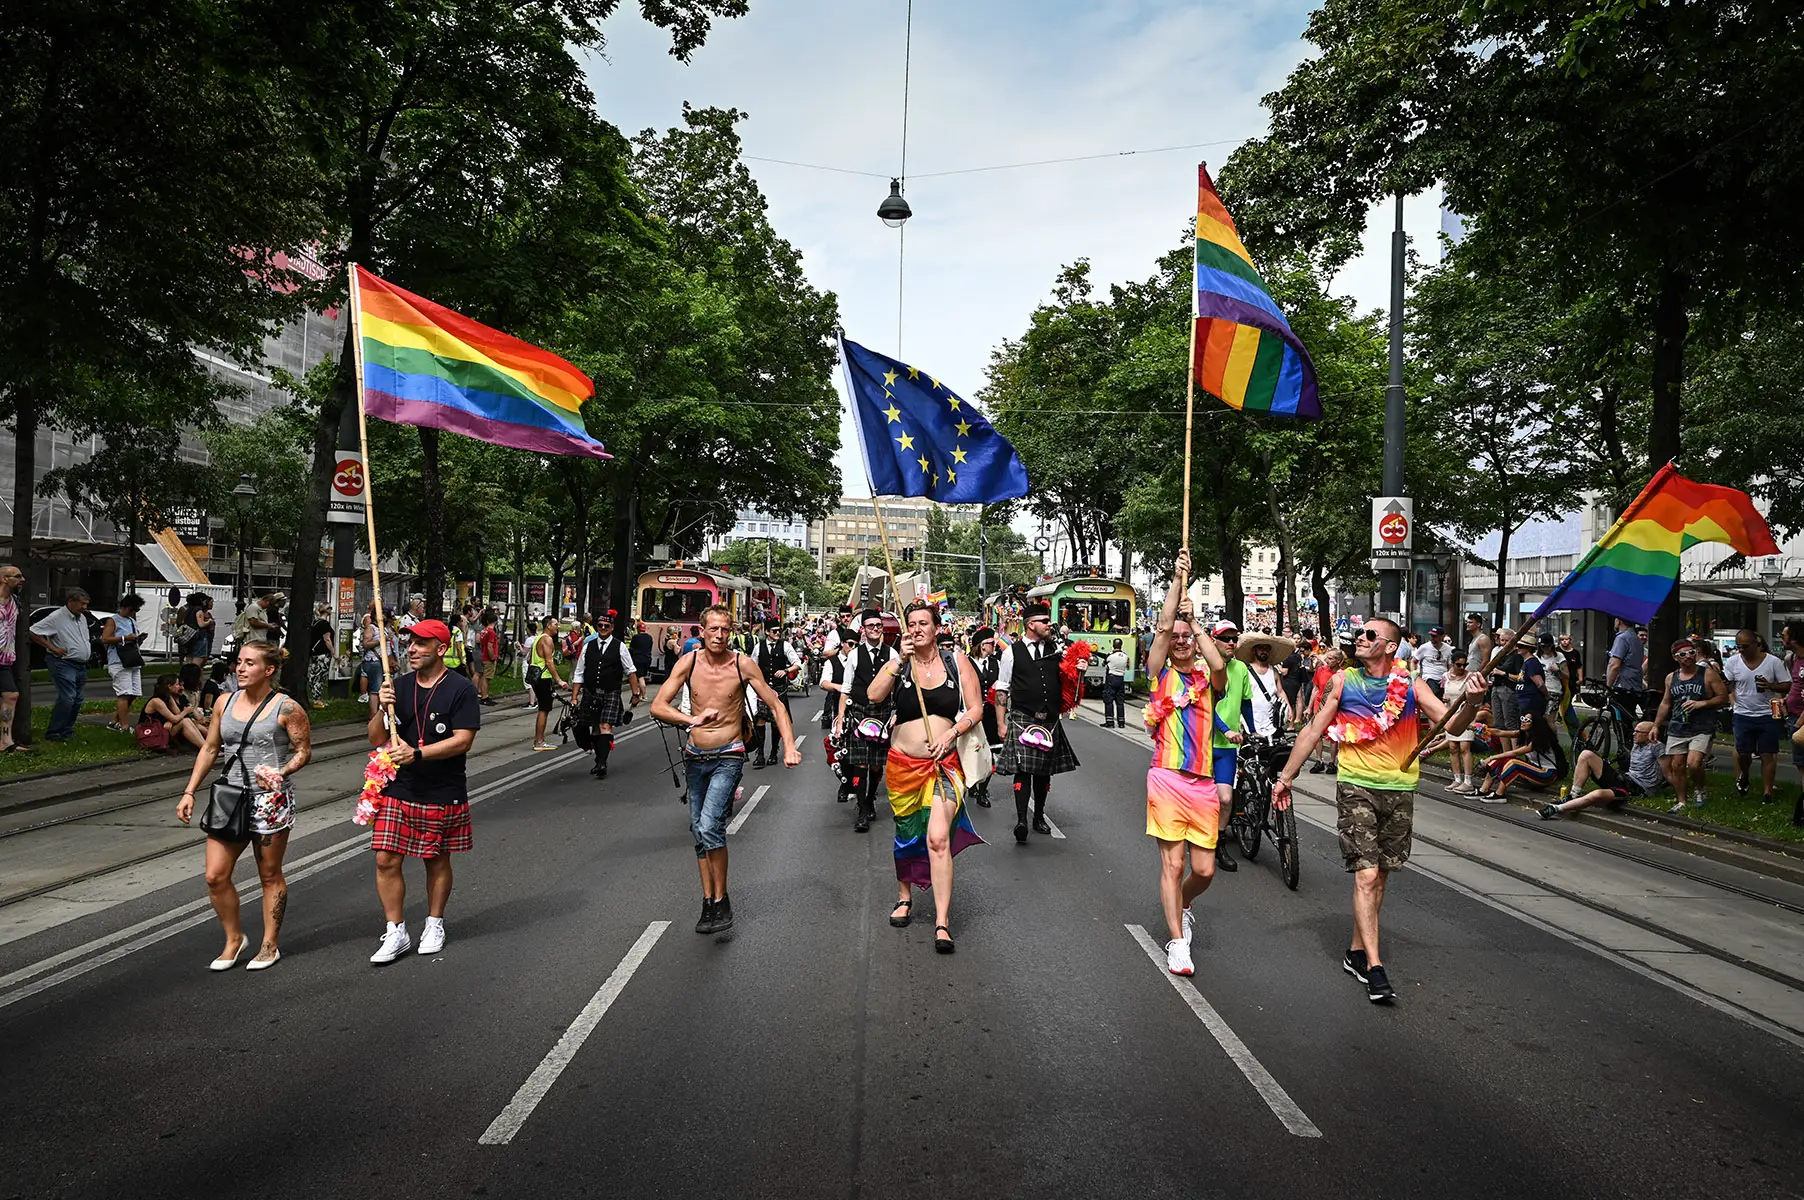 EuroPride 2019 in Vienna